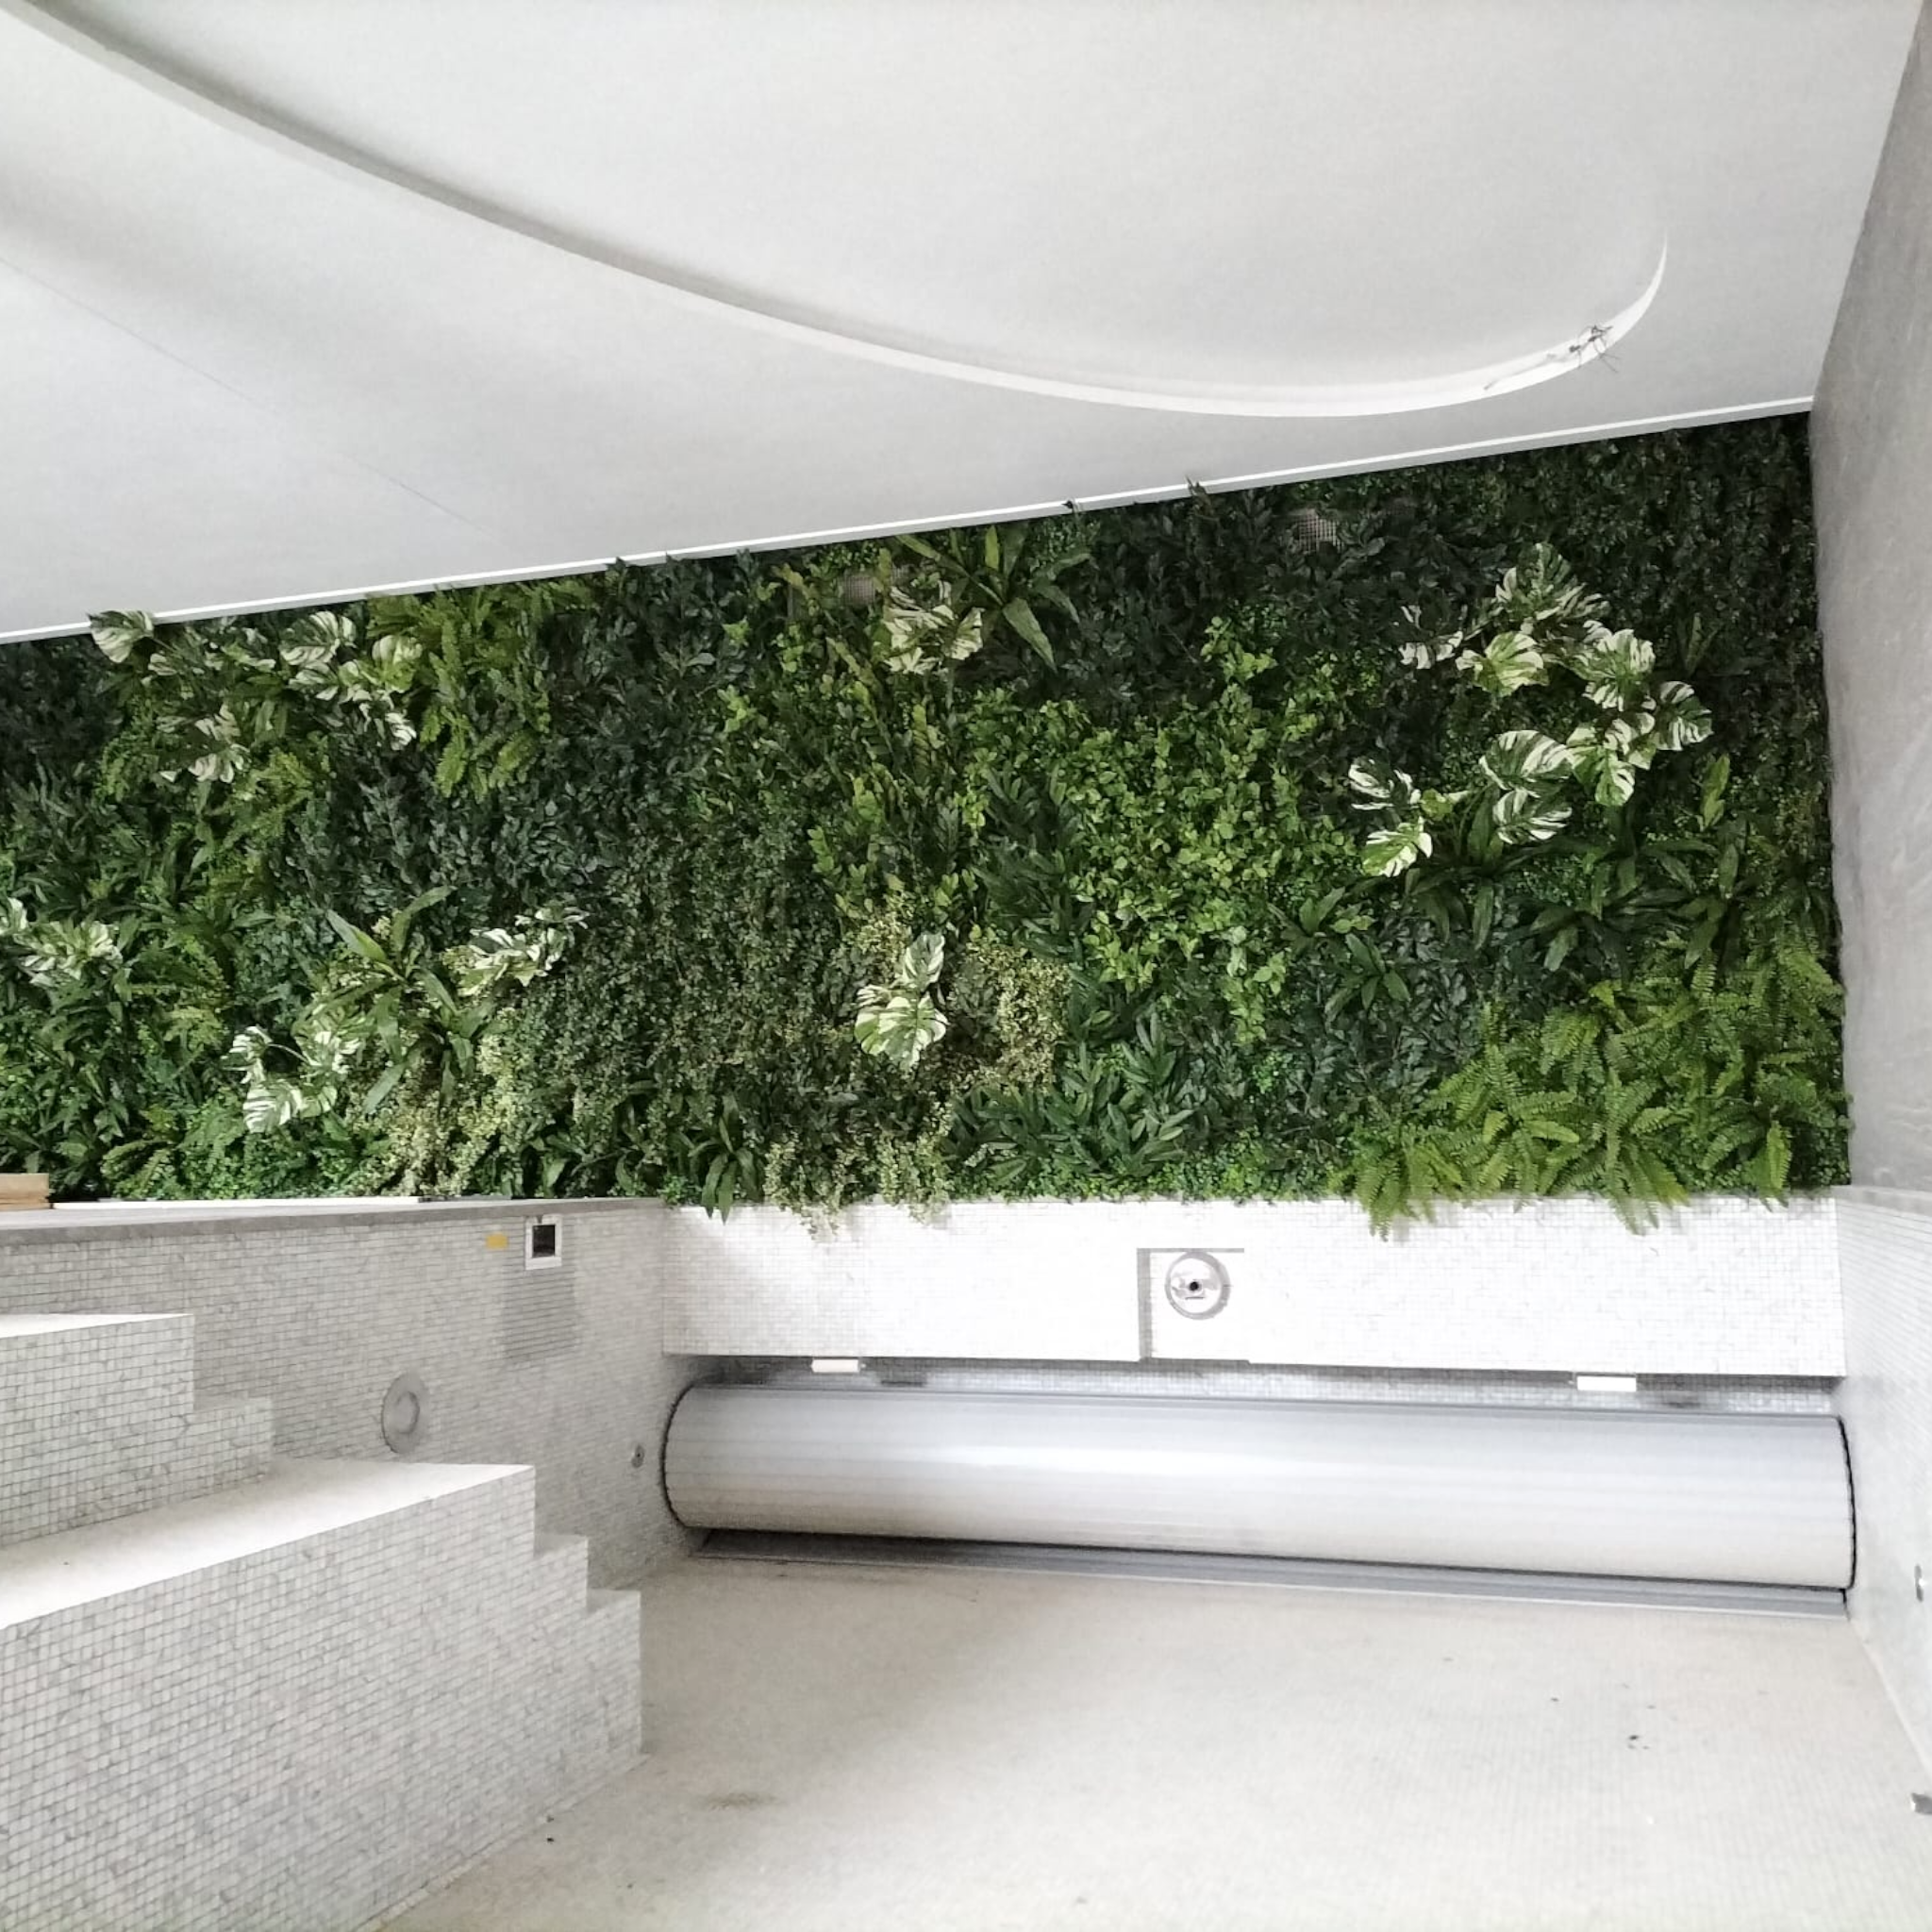 Mur végétal artificiel intérieur prêt à poser Premium Nature